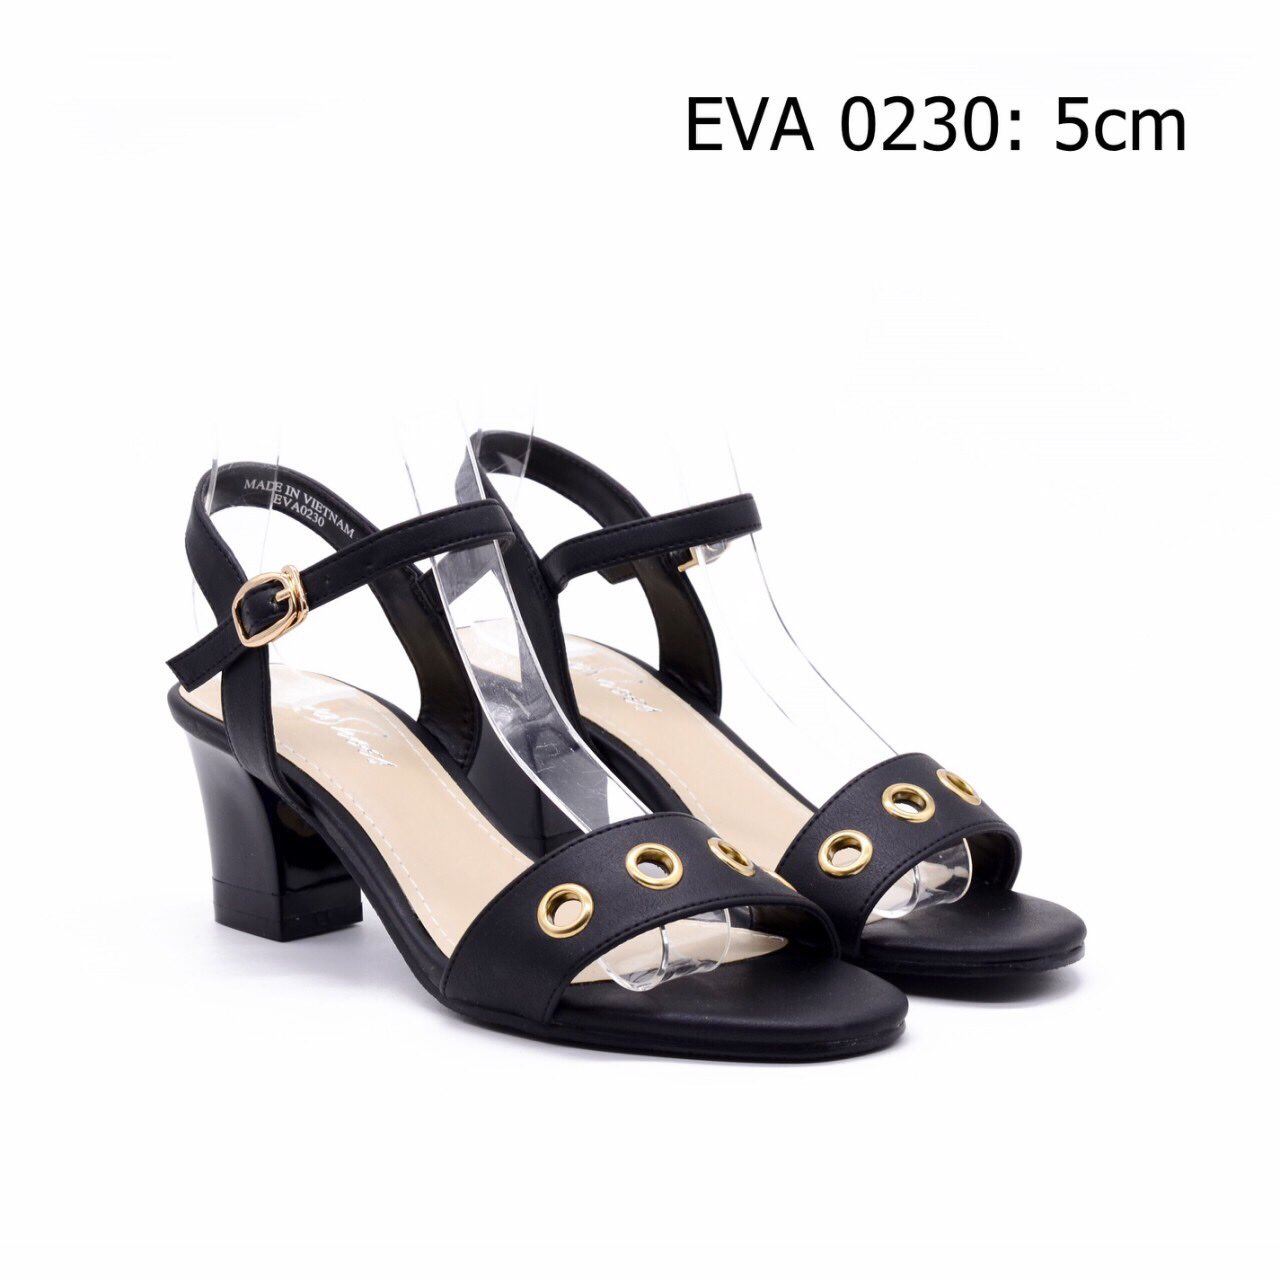 Sandal cao gót EVA0230 thiết kế ôm chân, da mềm.